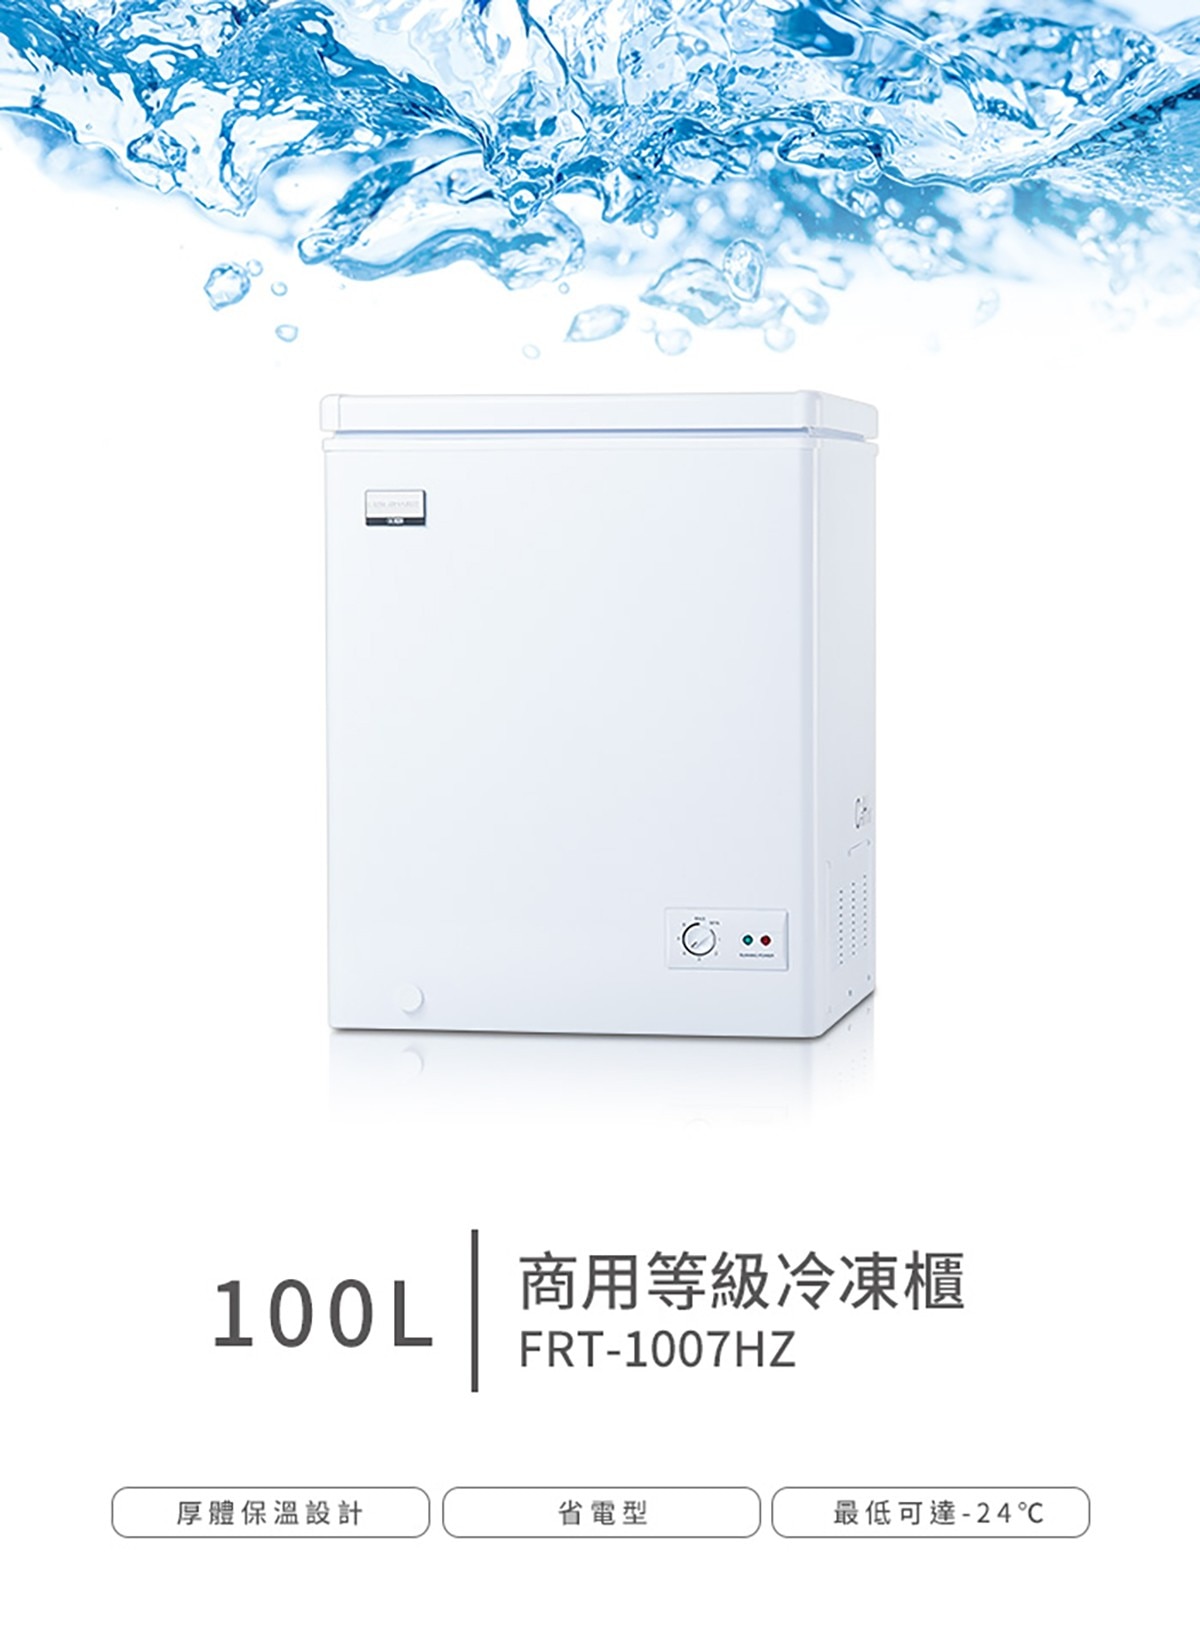 100公升商用臥式冷凍櫃,FRT-1007HZ,厚體保溫設計,省電型,最低可達-24度.